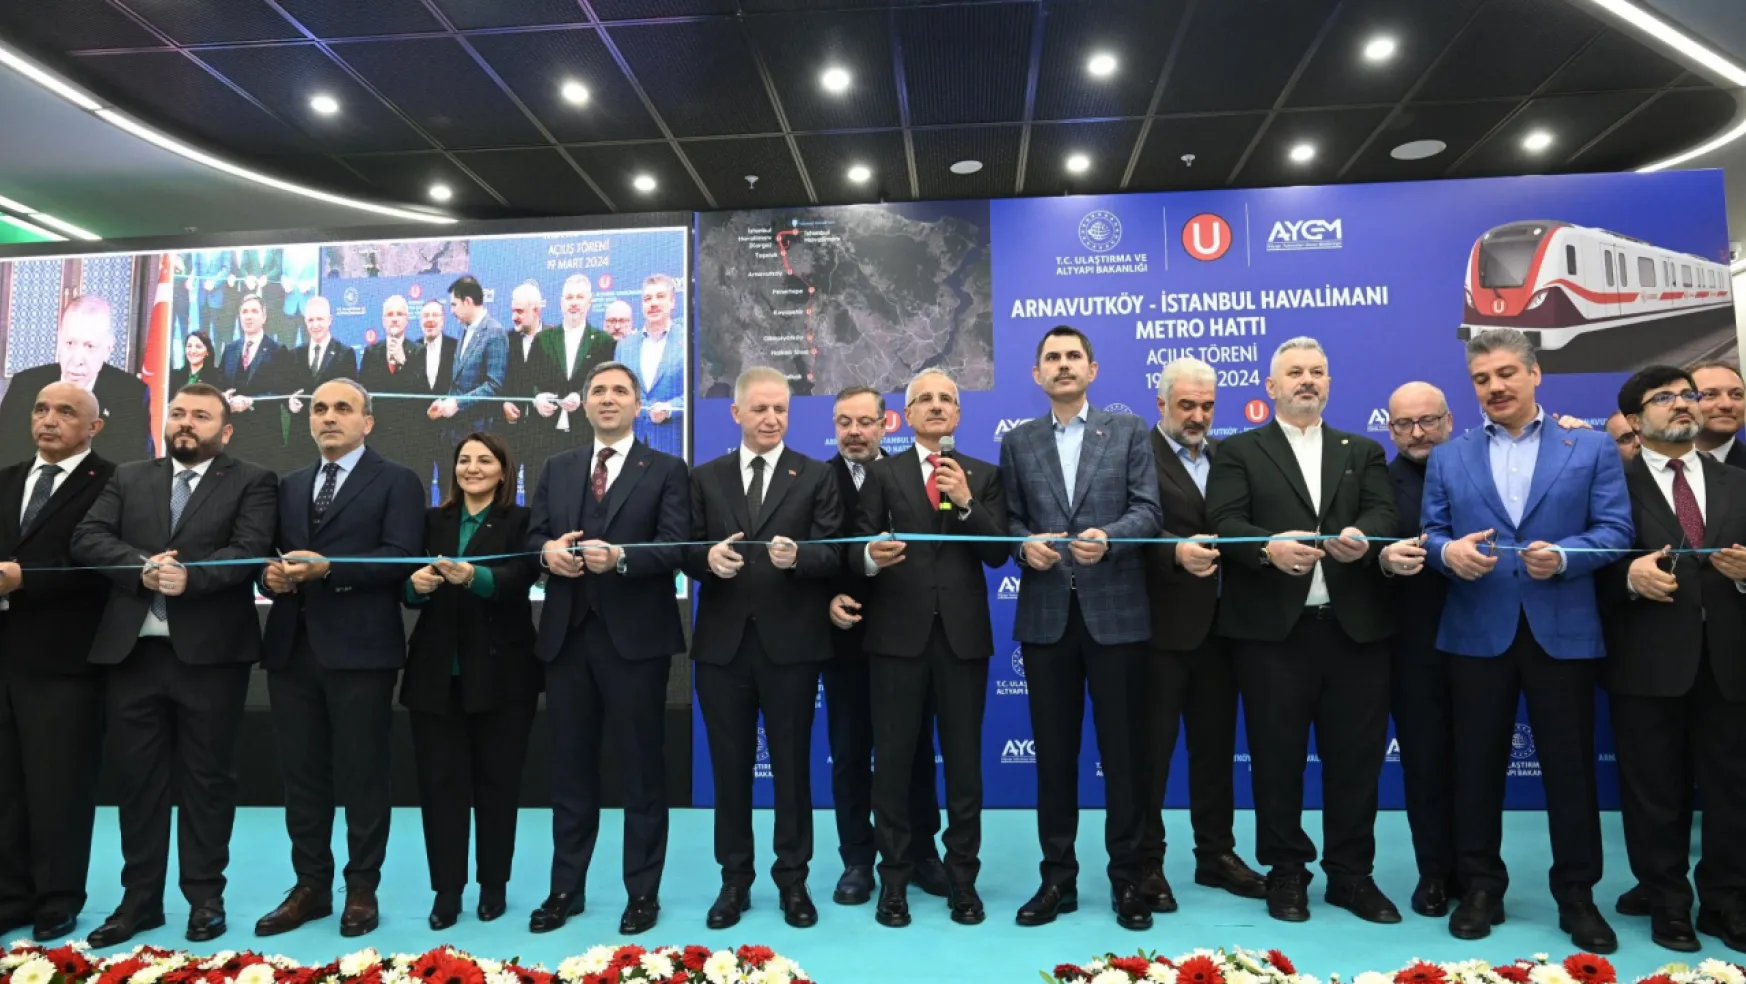 Arnavutköy-İstanbul Havalimanı Metrosu Hizmete Açıldı